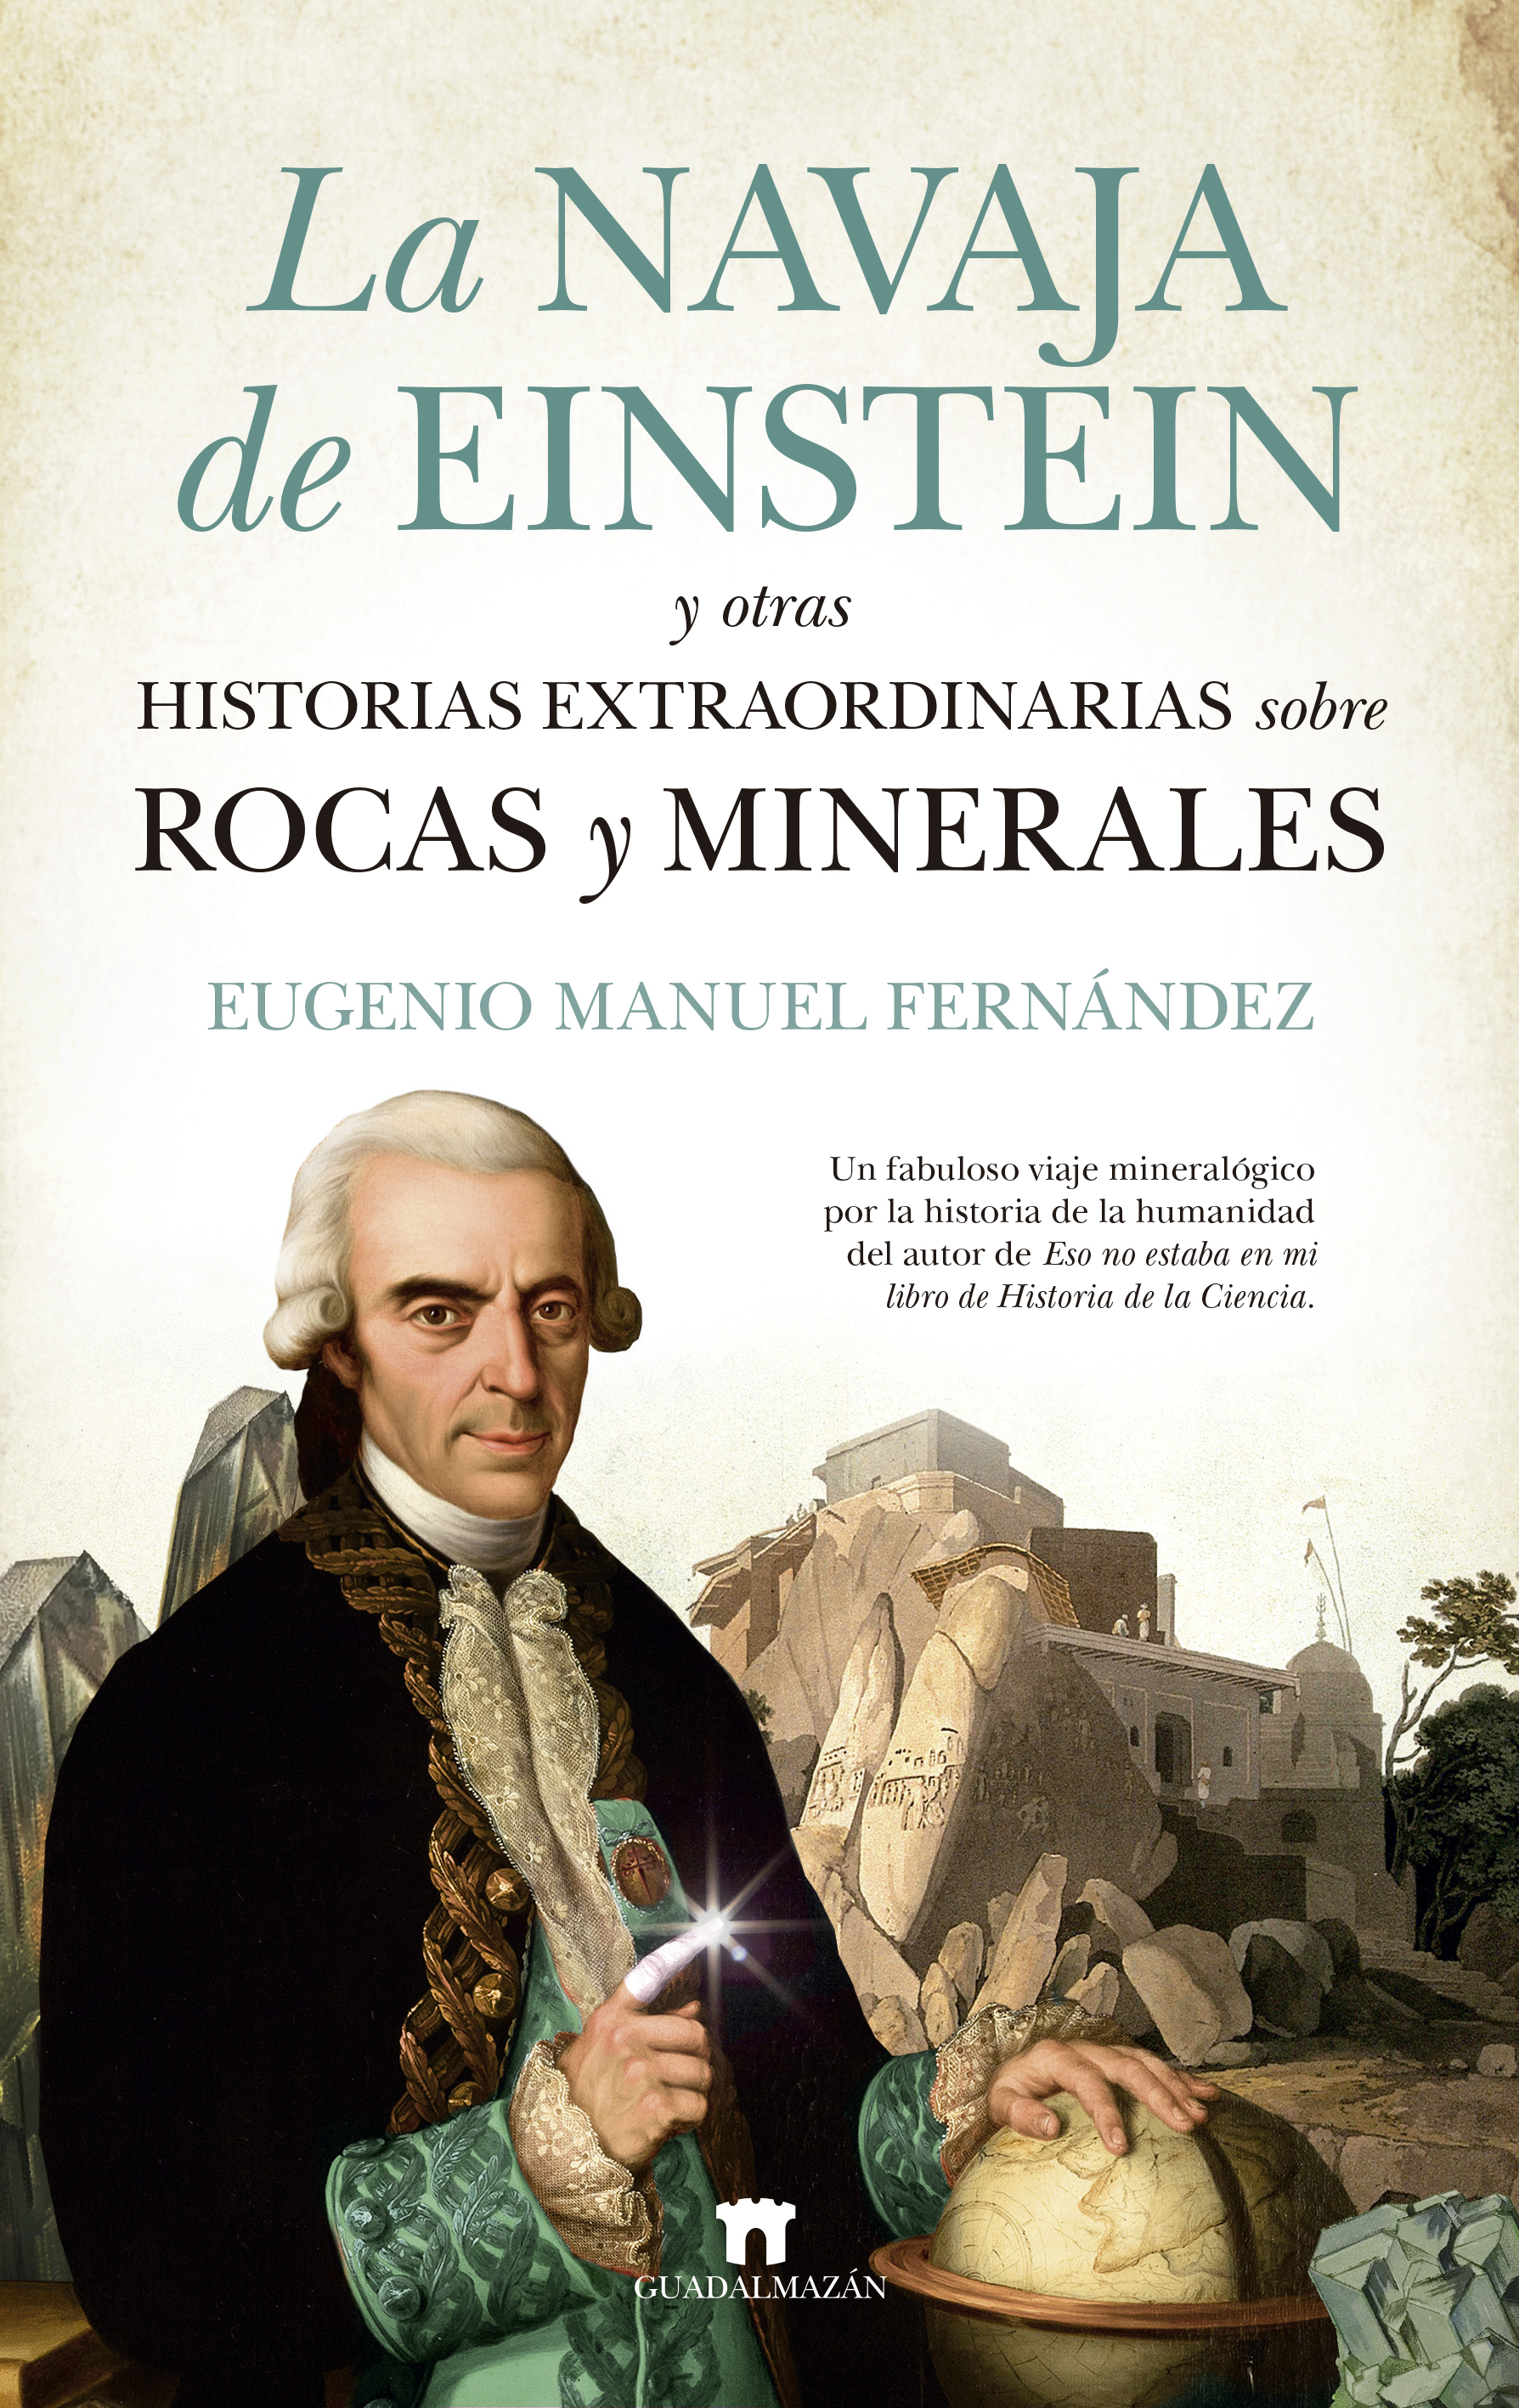 La navaja de Einstein y otras historias extraordinarias sobre rocas y minerales